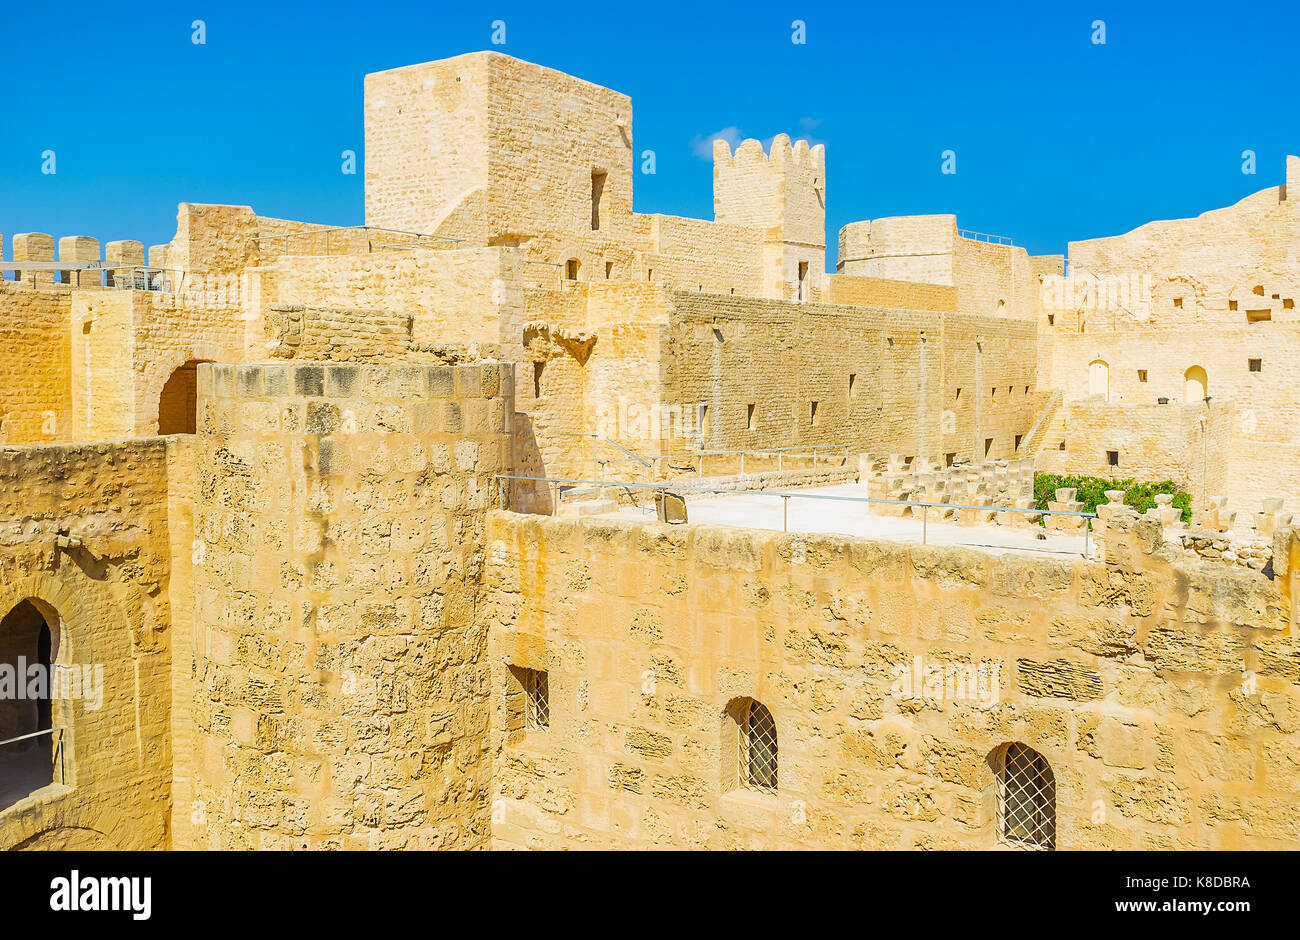 Ribat forteresse est le plus célèbre monument de Monastir, ce lieu historique conservé comme musée, concert hall et incroyable point de vue, la Tunisie. Banque D'Images